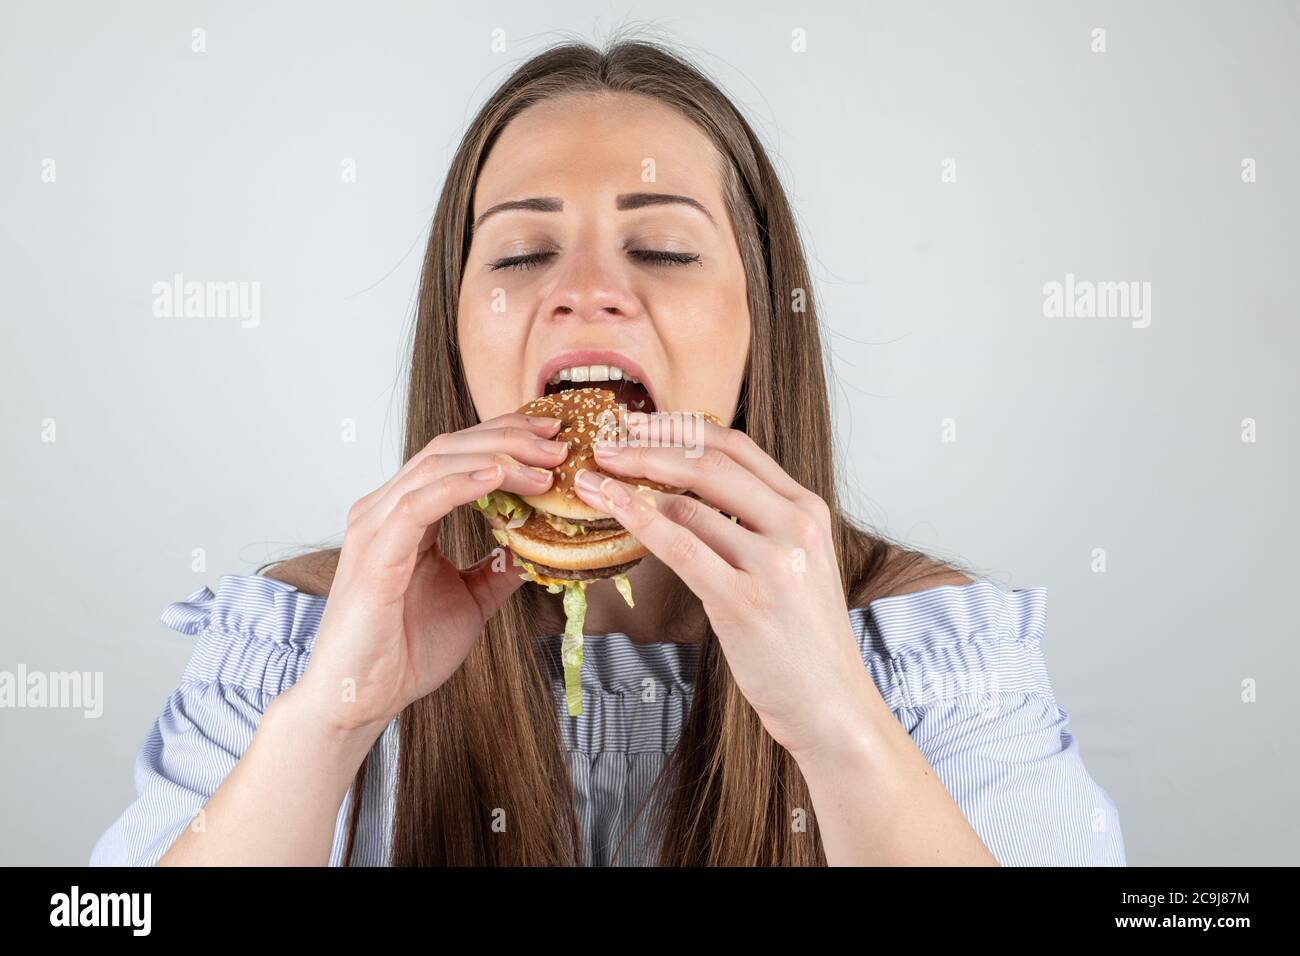 Ritratto di una bella giovane donna che mangia un hamburger, primo piano, occhi chiusi, isolato su sfondo bianco Foto Stock